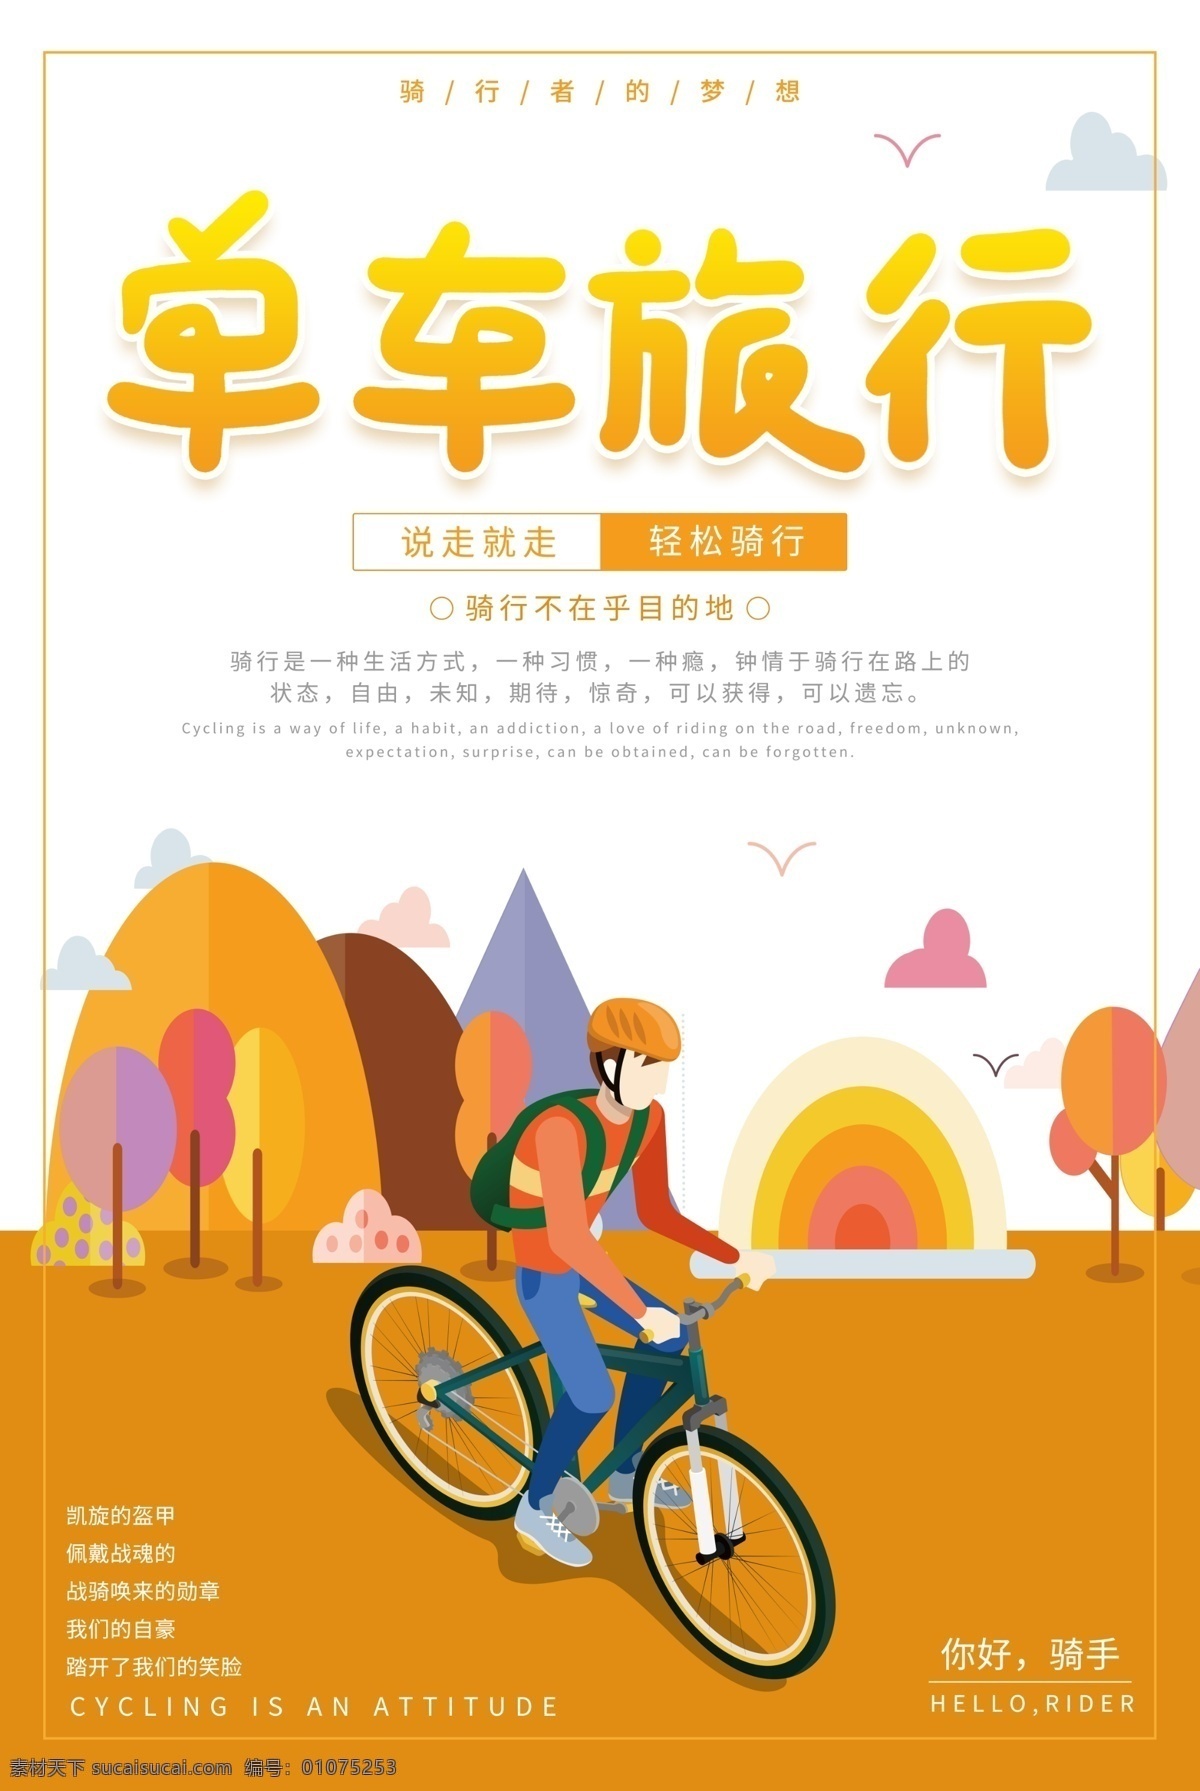 单车 旅行 骑 行 海报 骑行 旅游海报 说走就走 自由 自行车 单车旅行 骑手